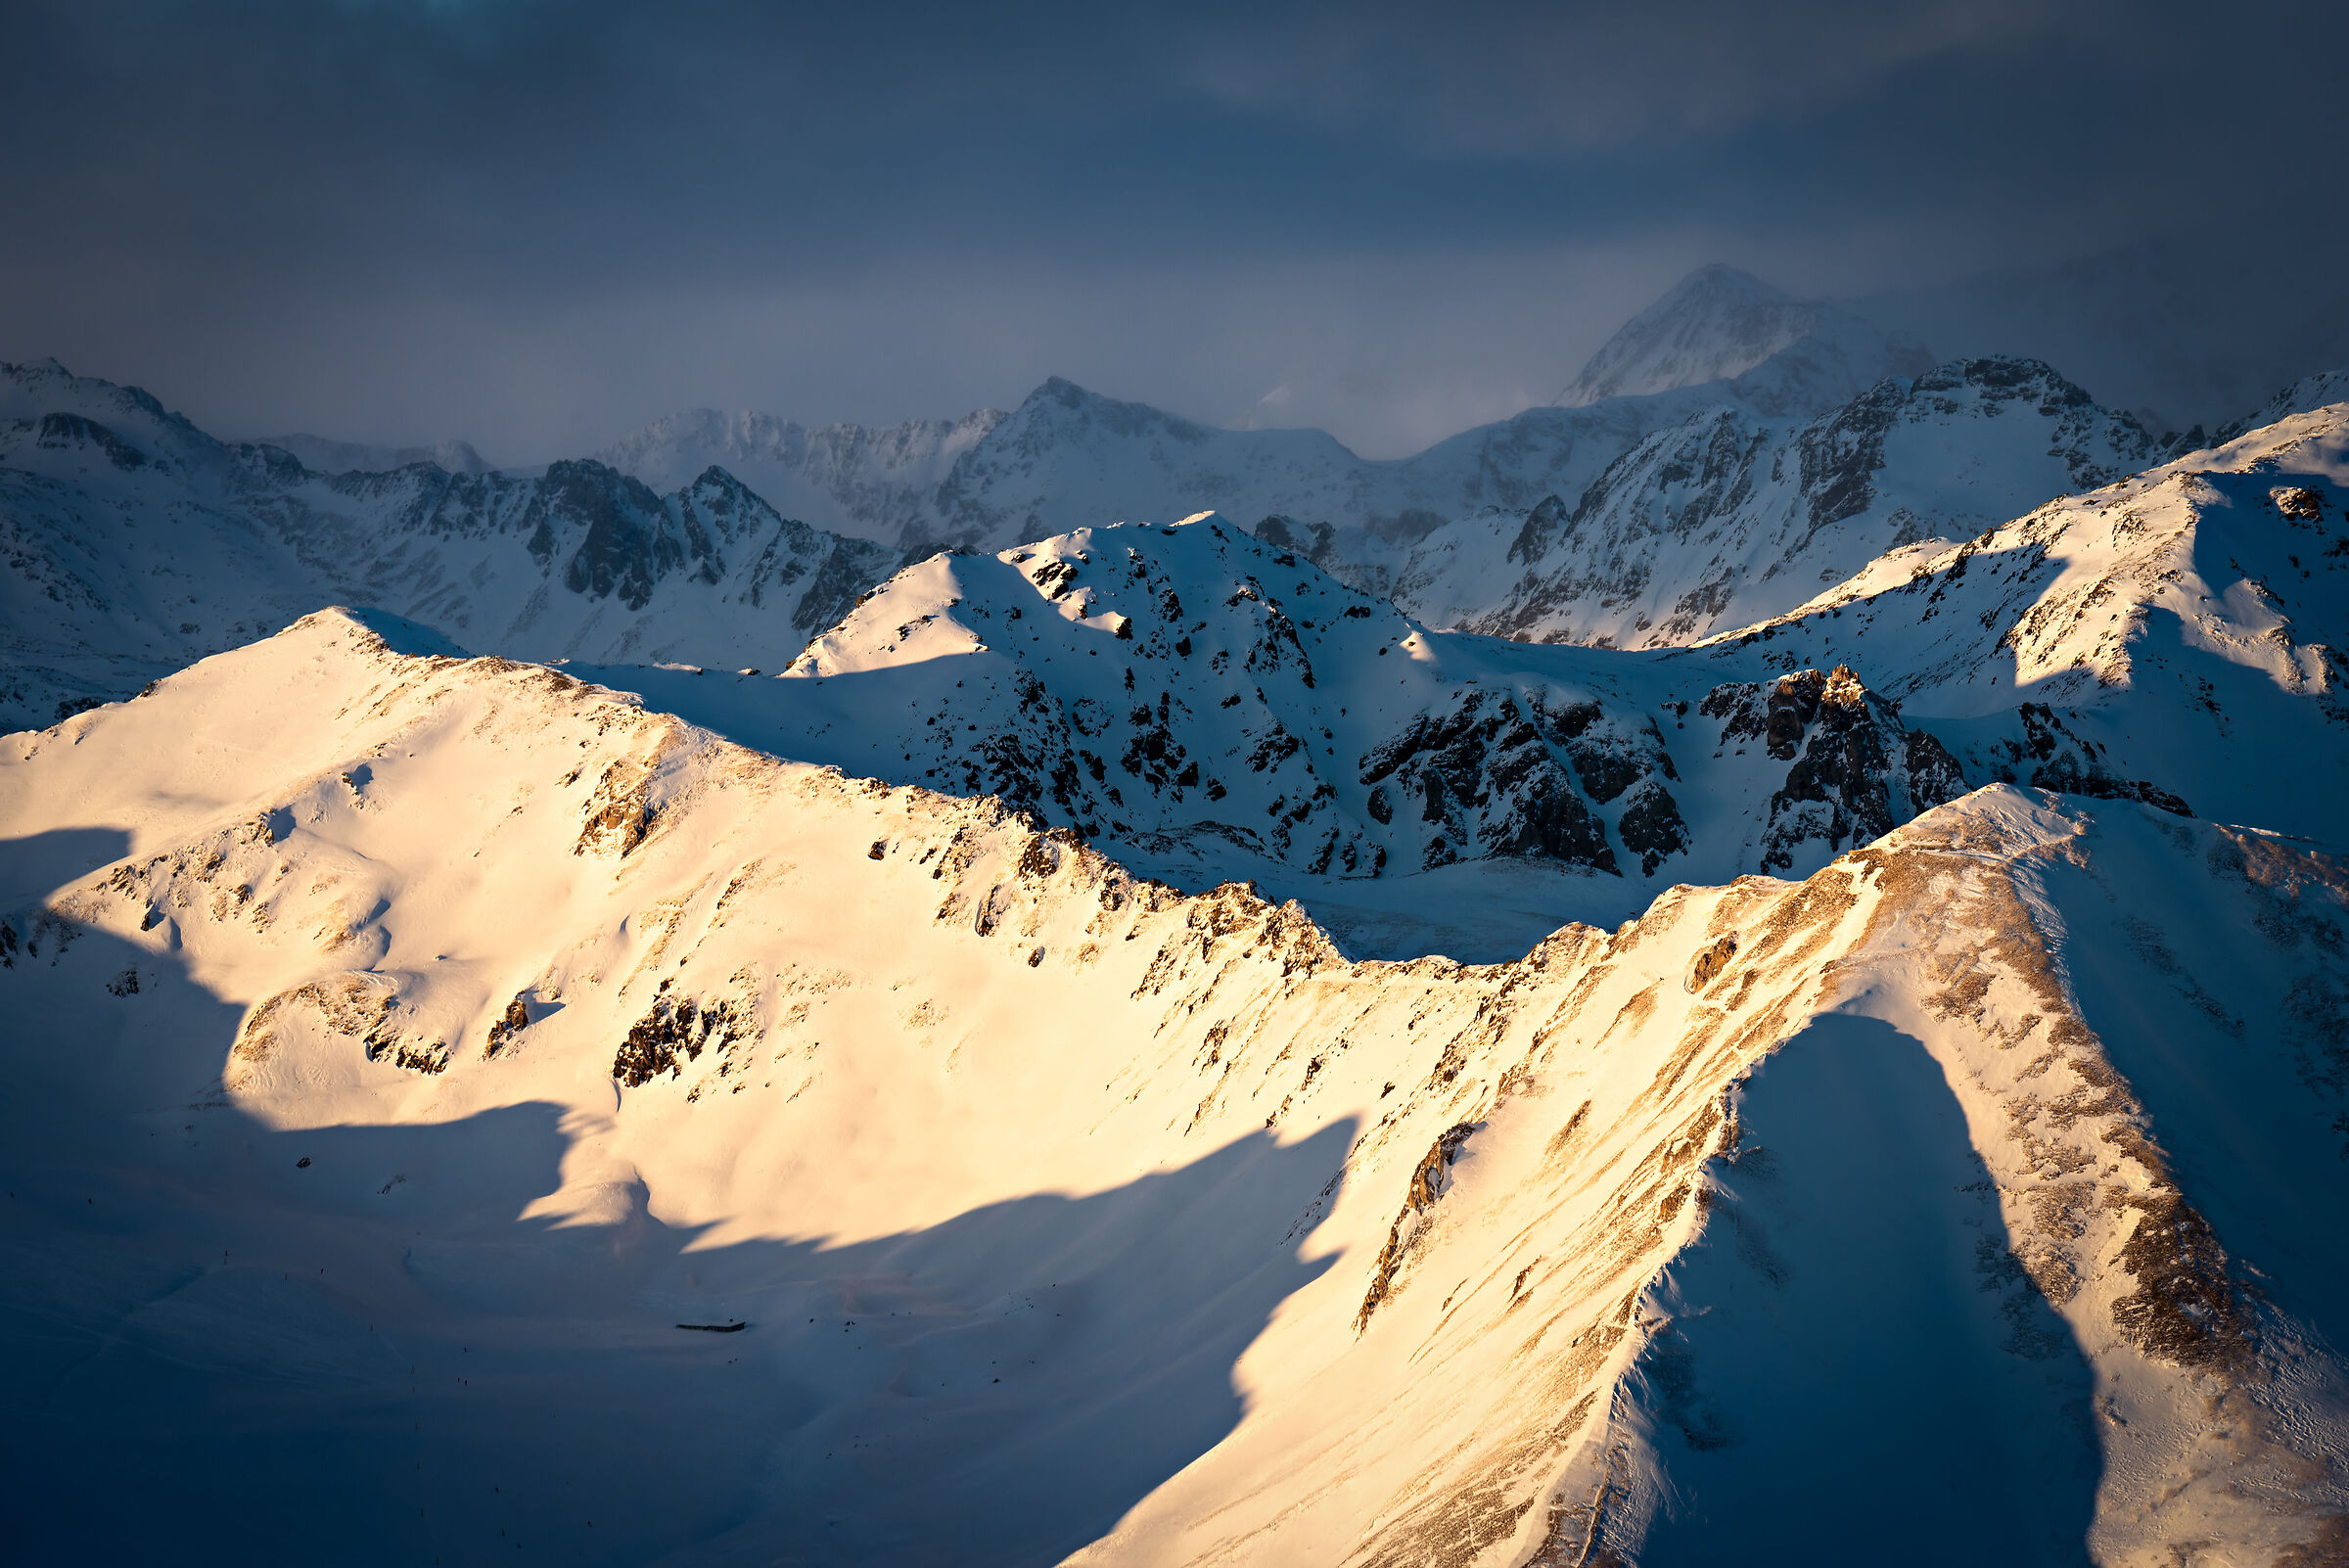 Last light on Alpi_01...